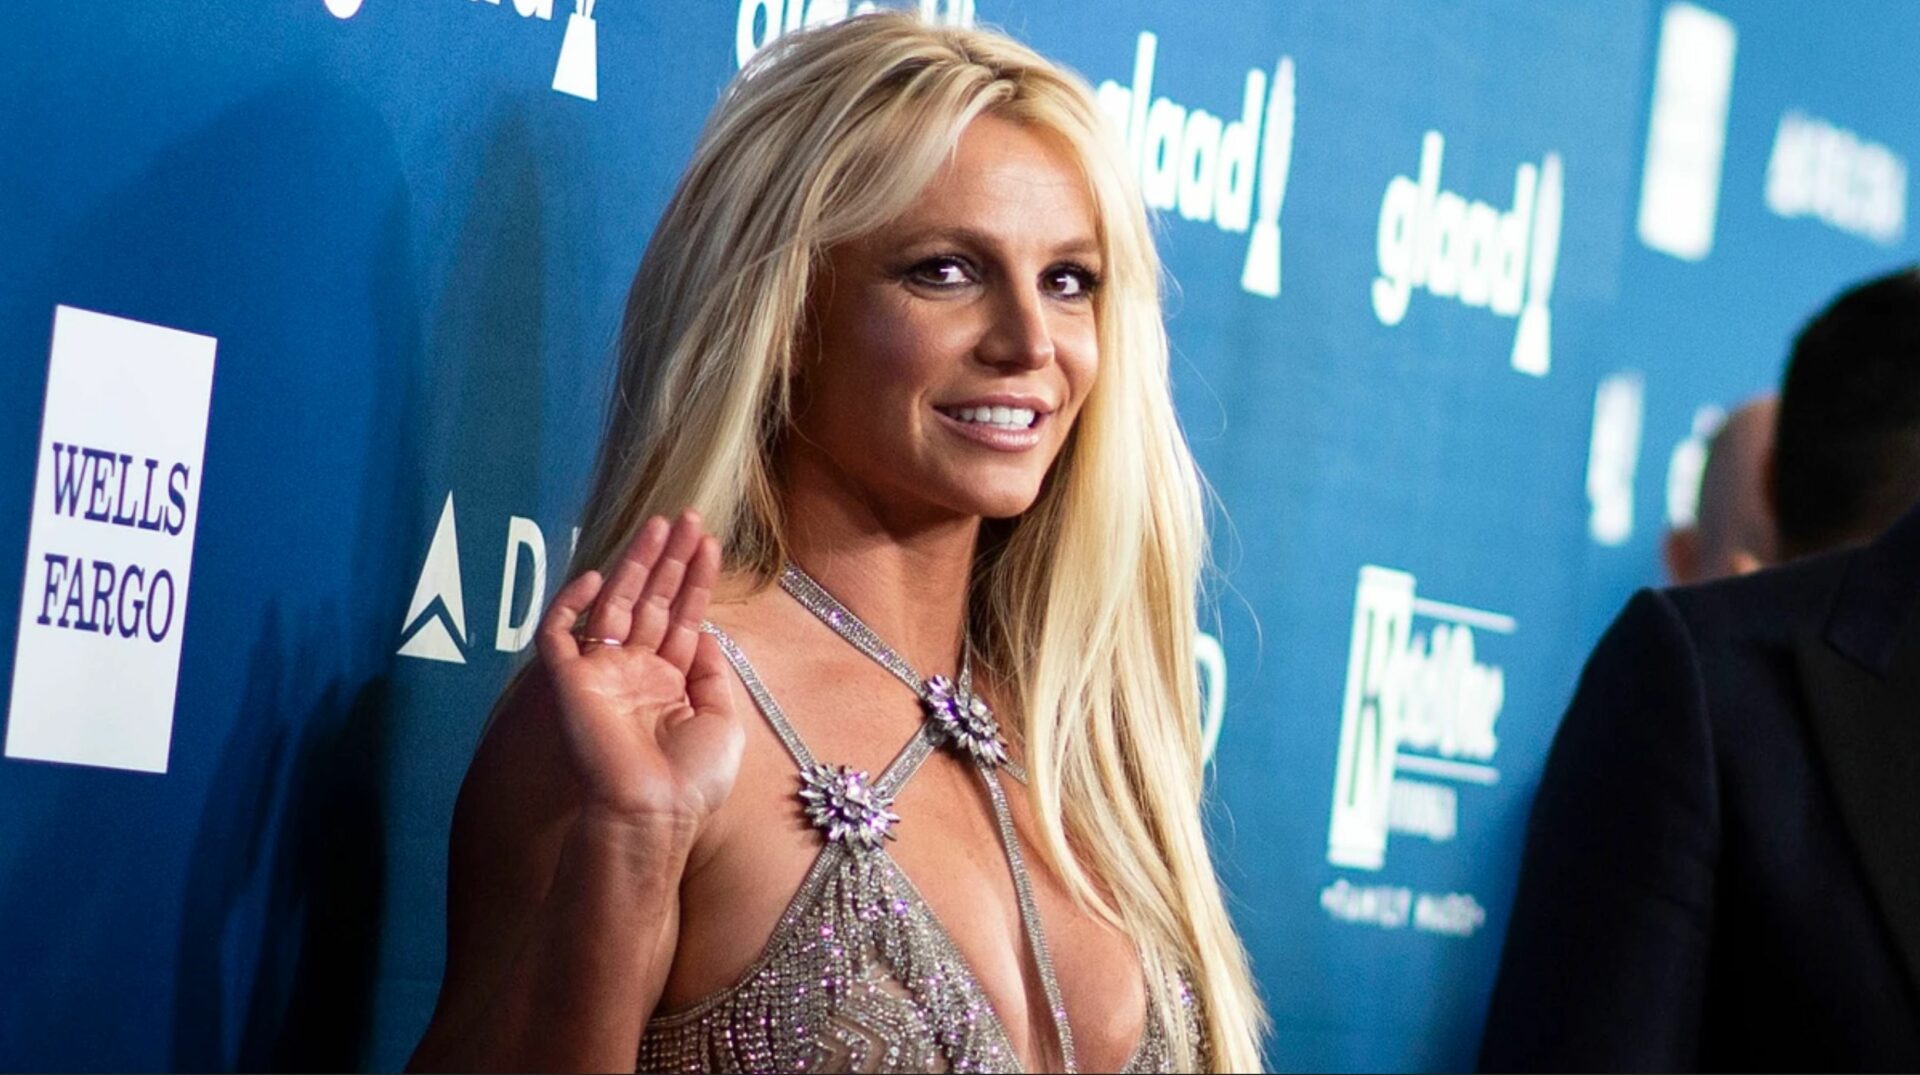  La chanteuse Britney Spears assiste à la 29e édition des GLAAD Media Awards. (Photo de VALERIE MACON/- via Getty Images)